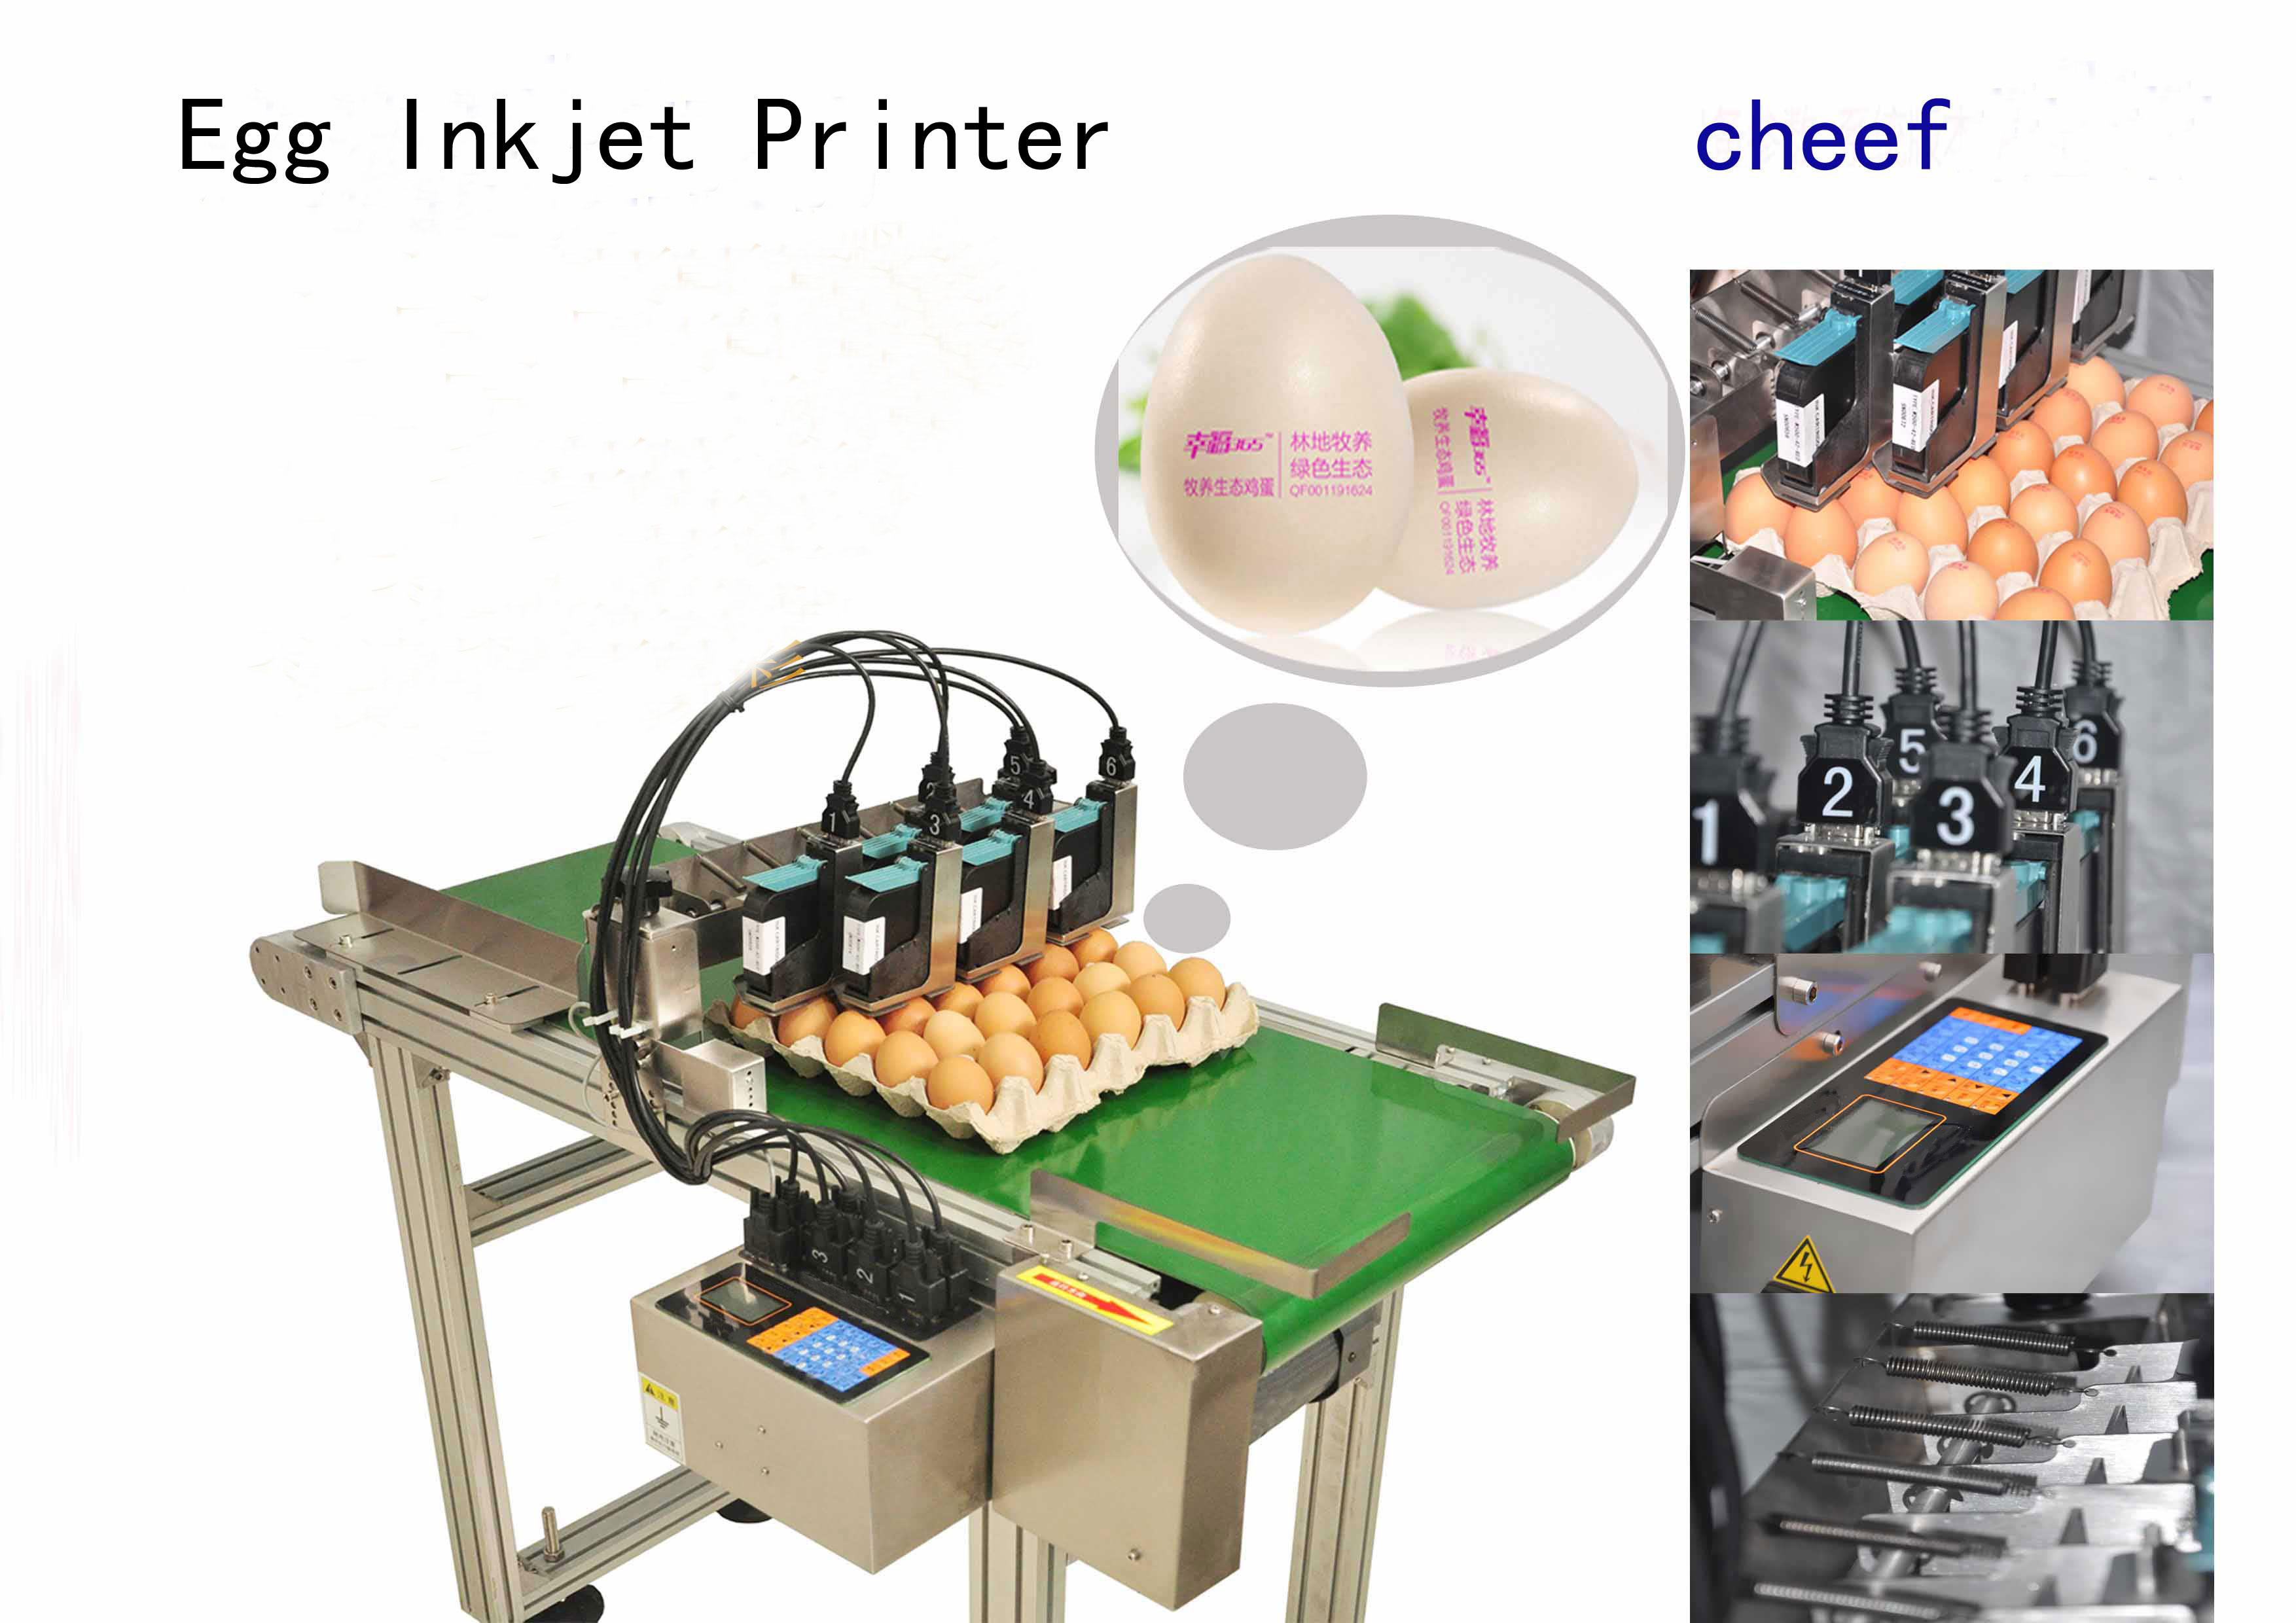 il produttore fornisce stampanti a getto d'inchiostro specifiche per uova ad alta efficienza con un trasportatore di 2 metri